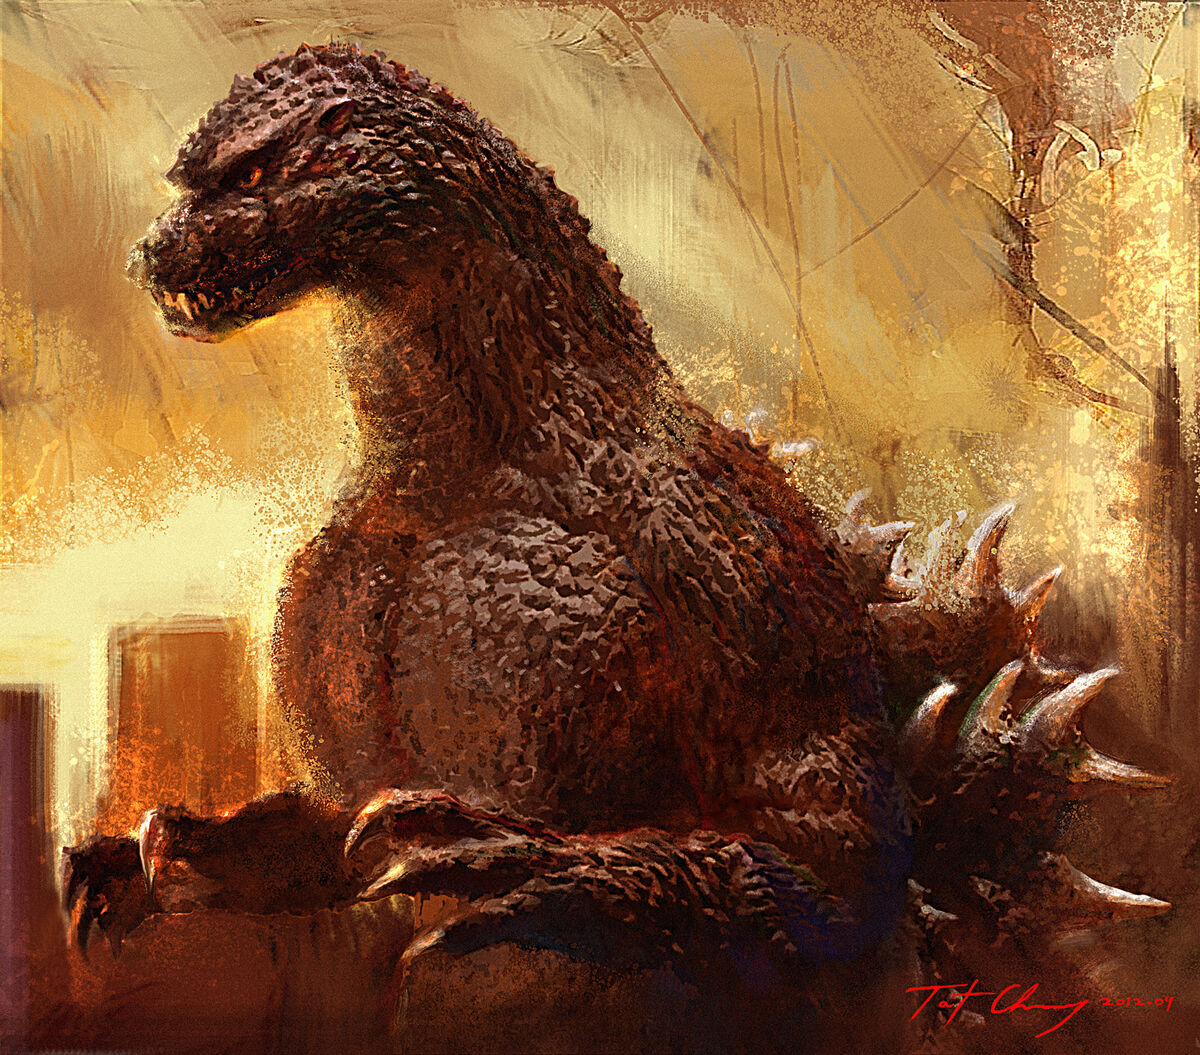 Godzilla Theme Final Wars  YouTube